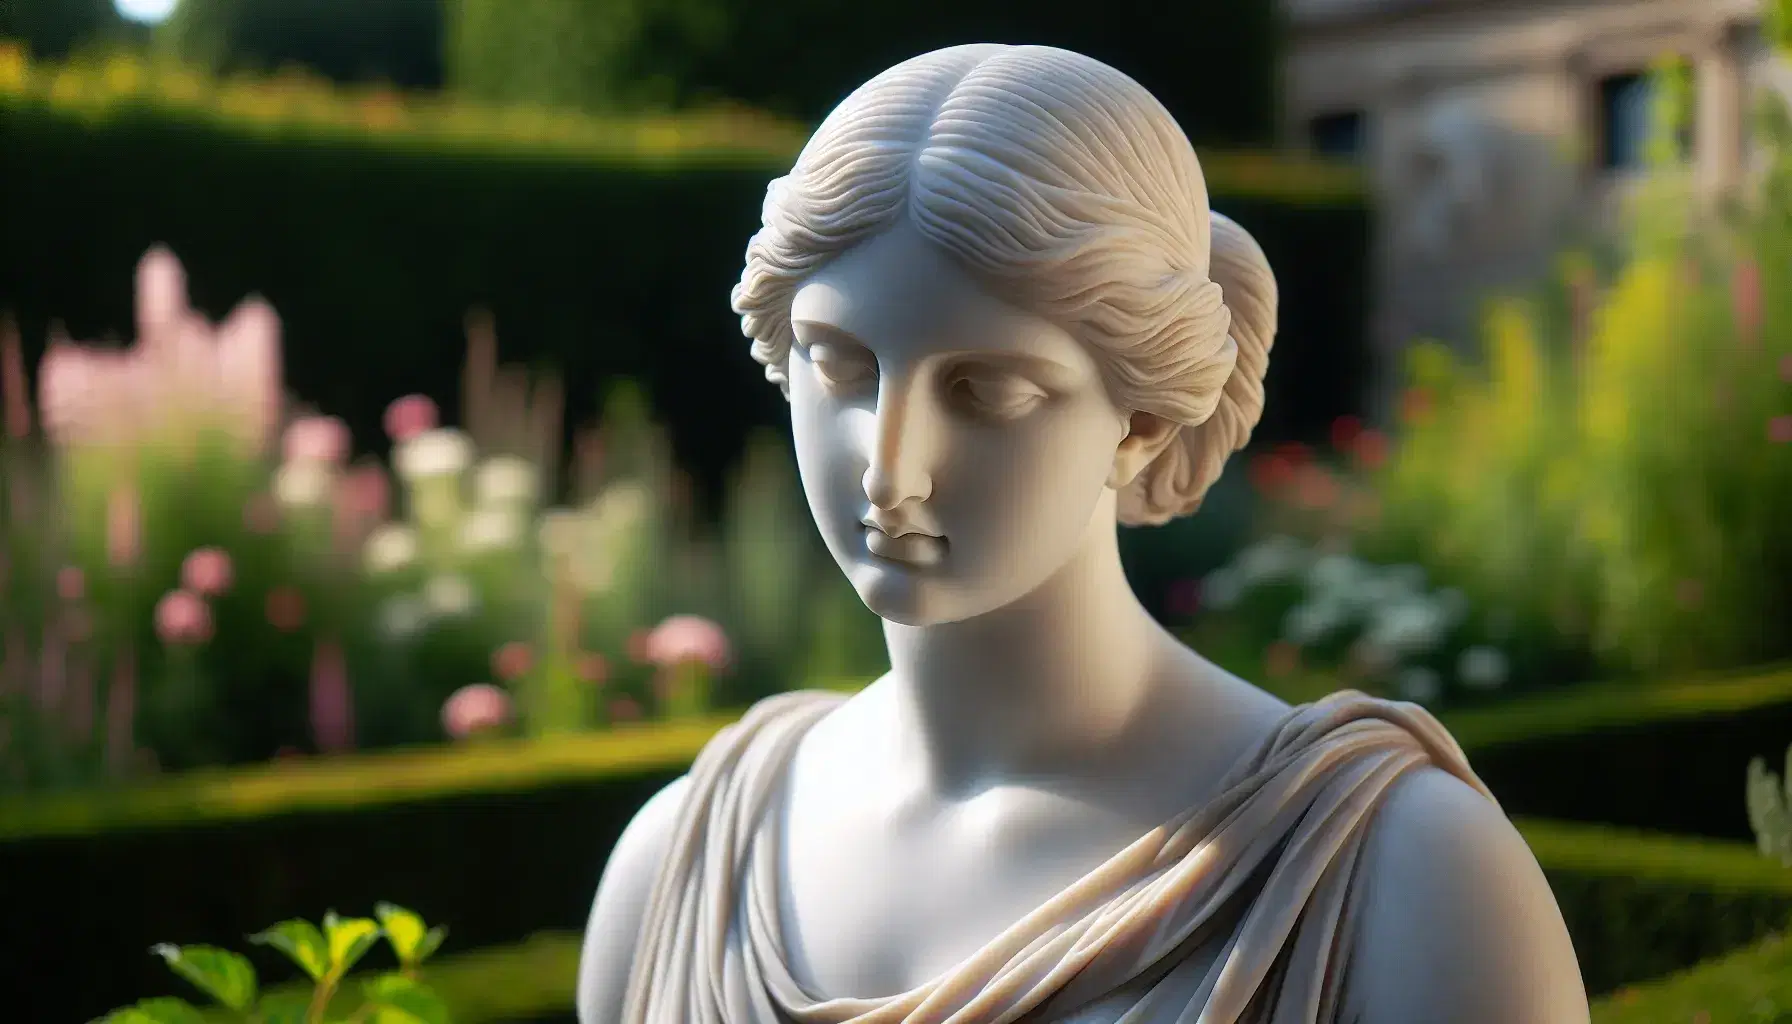 Escultura de mármol blanco de estilo clásico que representa la cabeza y hombros de una mujer con vestido drapeado, iluminada por luz natural y rodeada de un jardín verde.